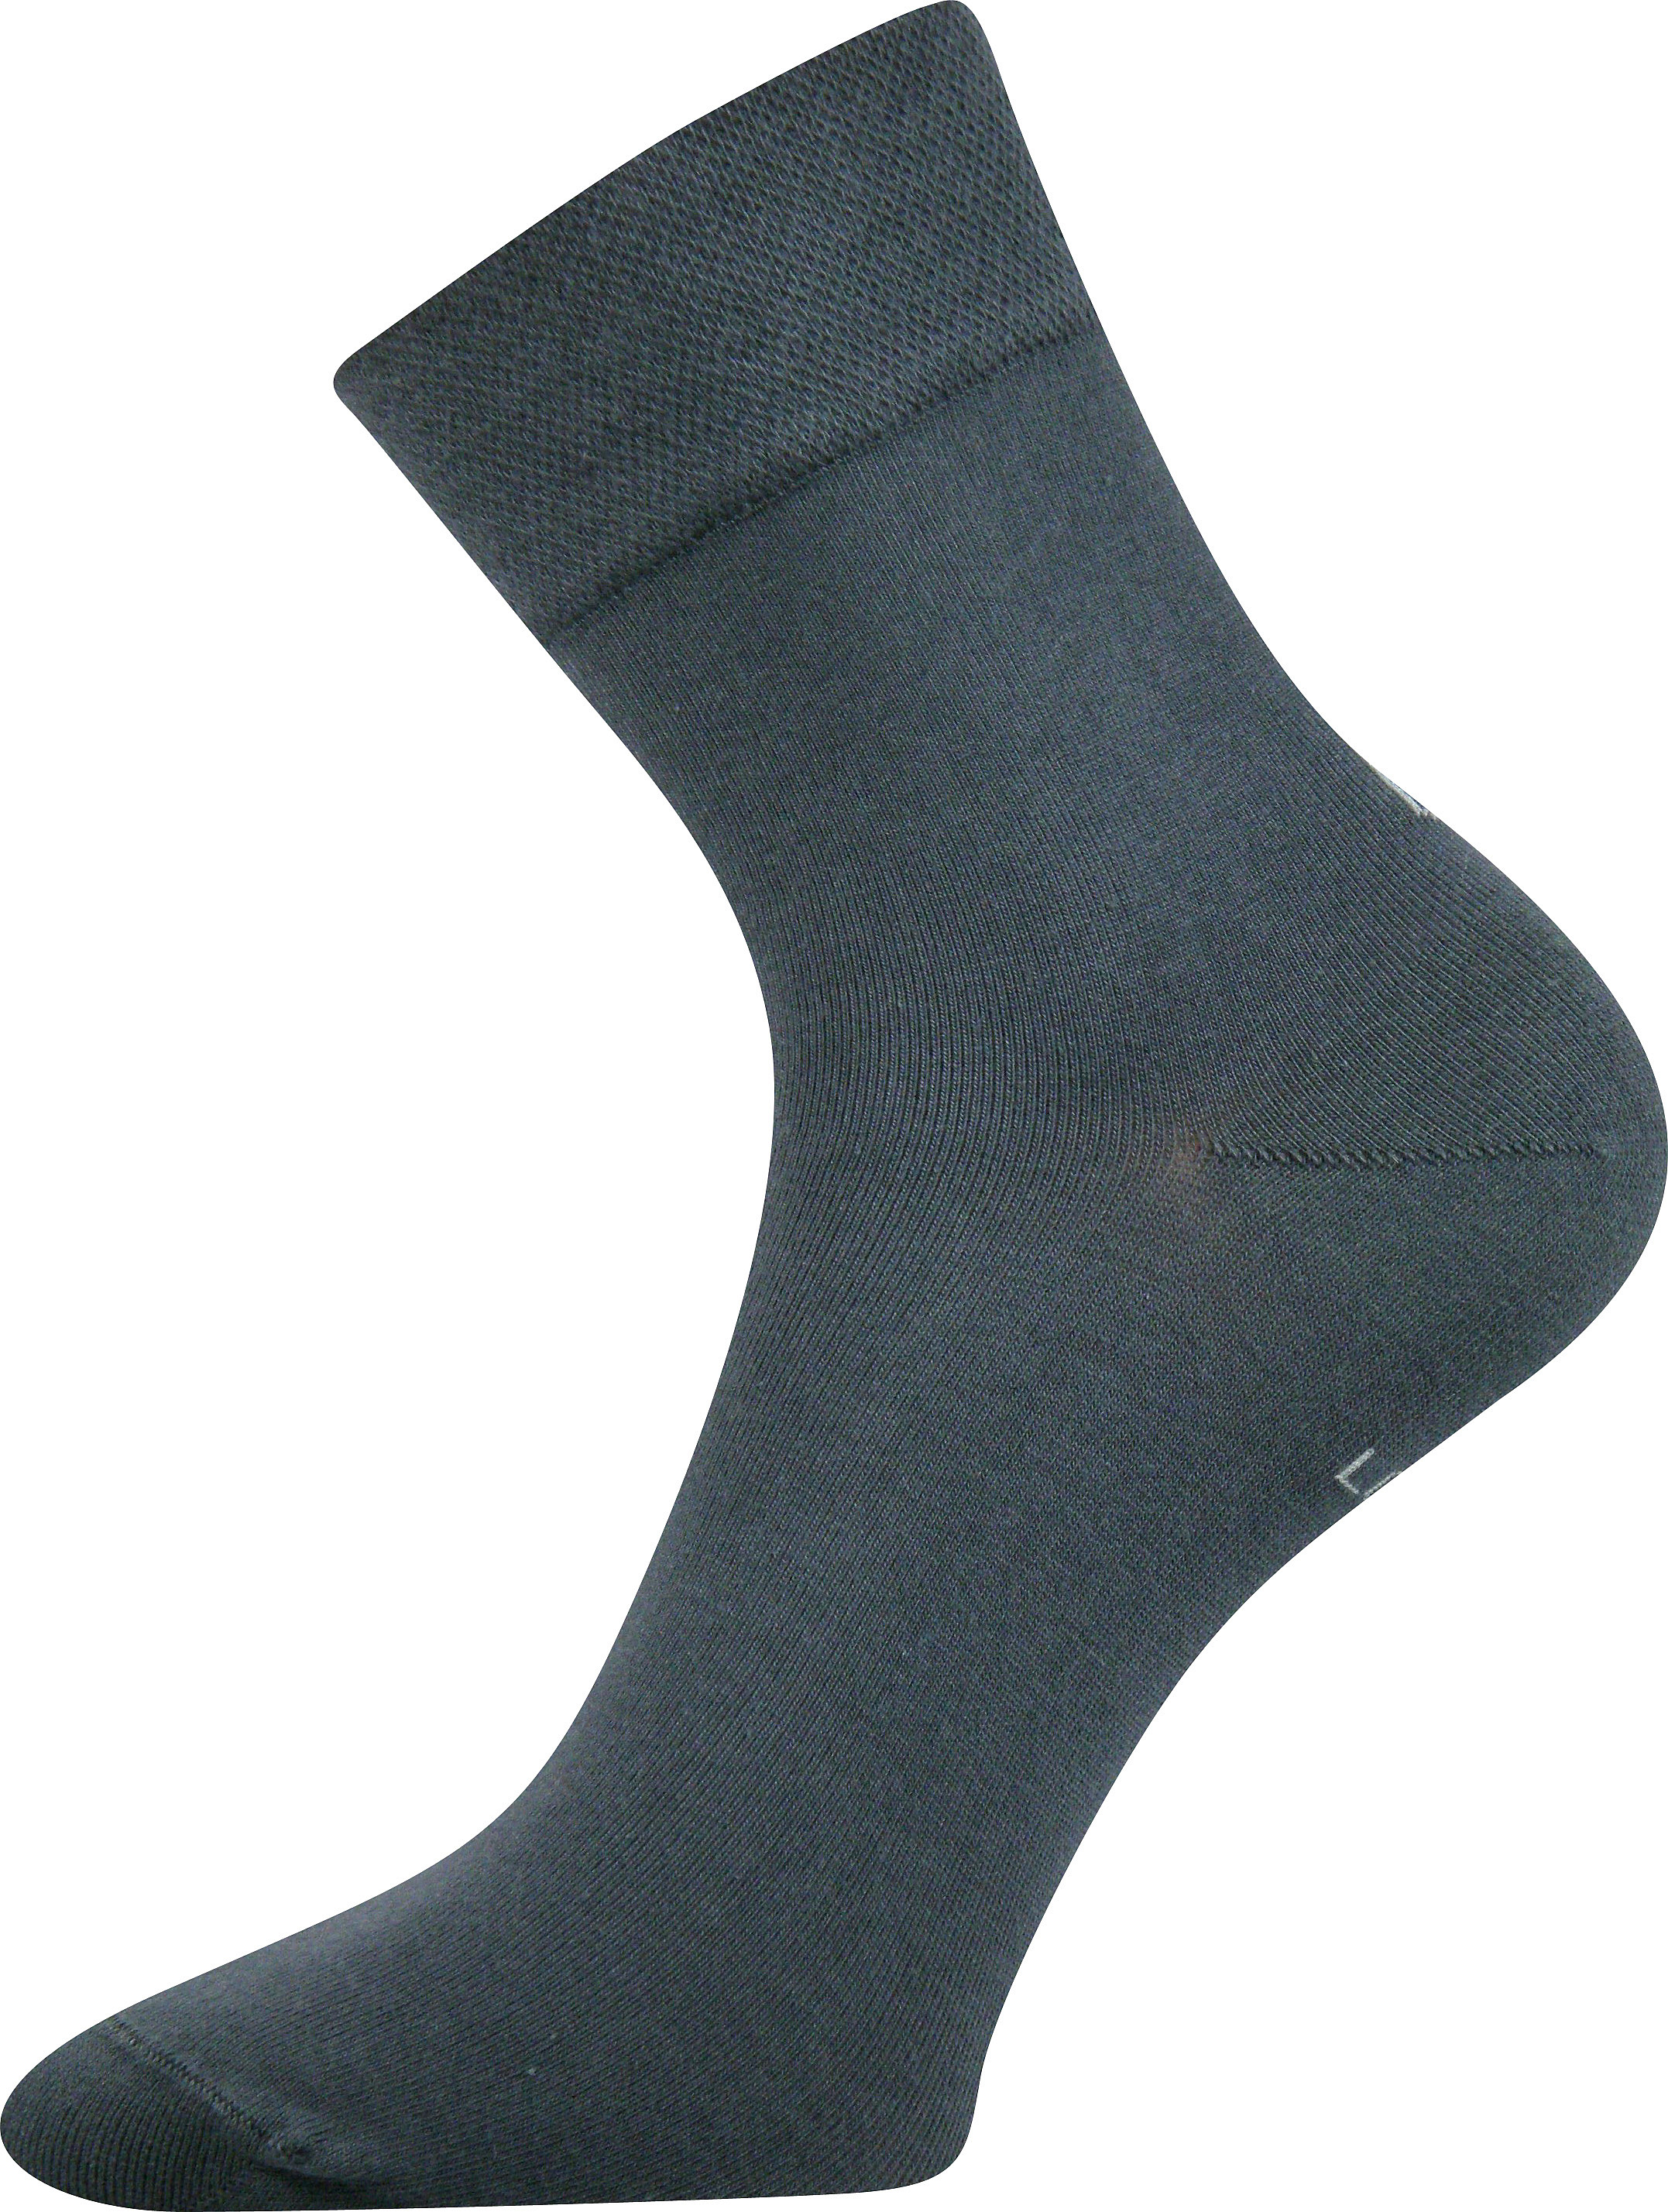 Ponožky dámské Lonka Fanera - tmavě šedé, 35-38